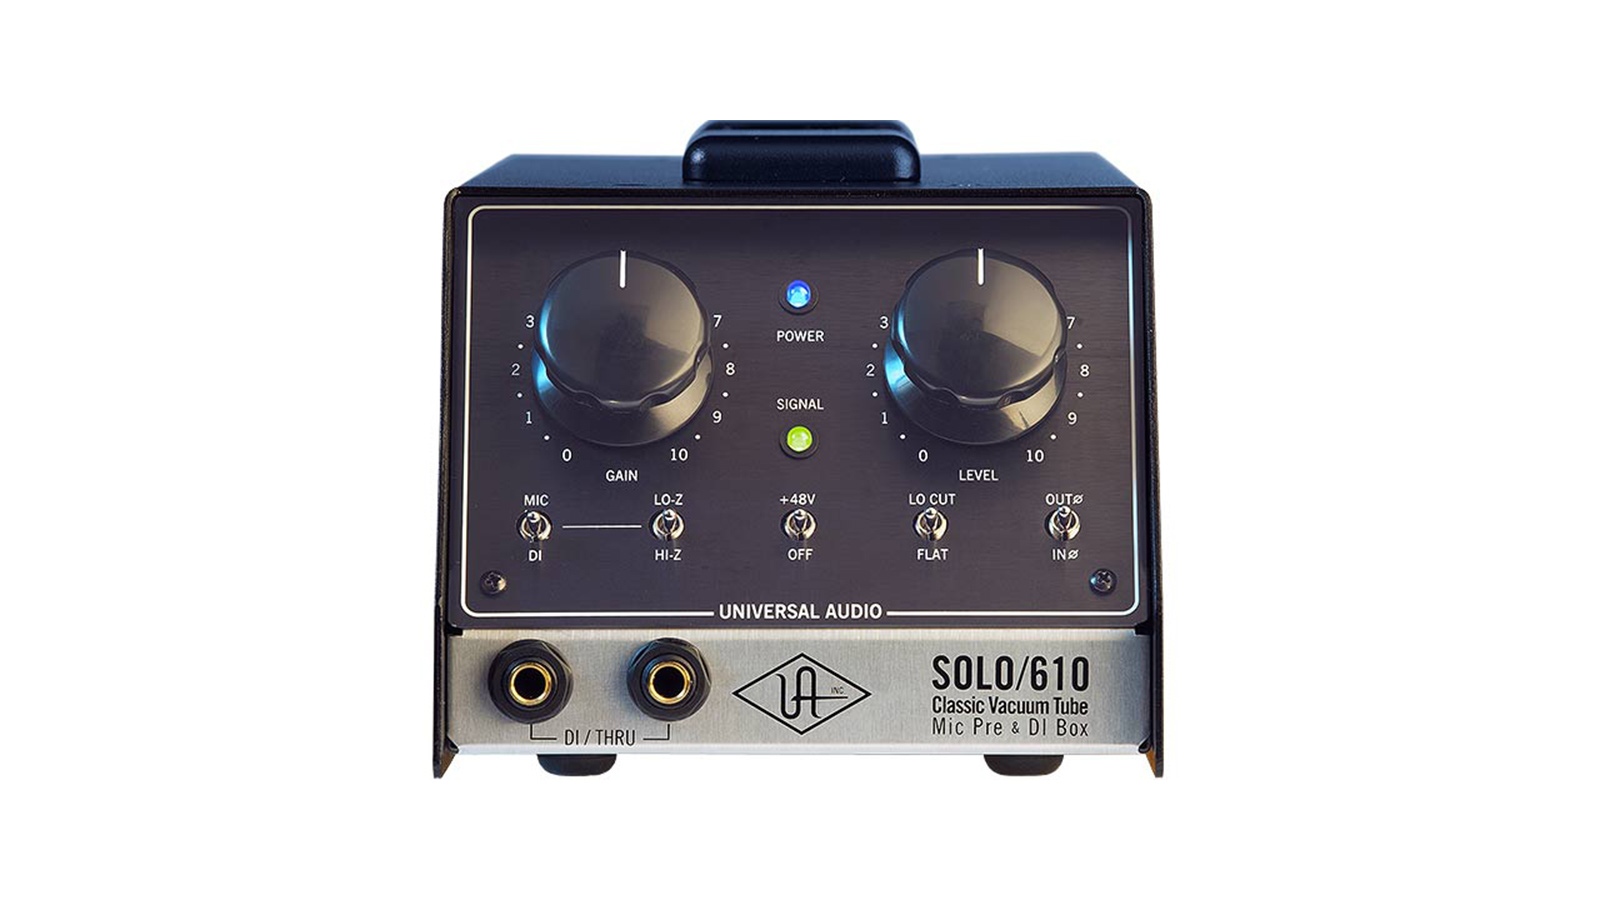 SOLO/610 Classic Tube Preamplifier and DI Box - Universal Audio 